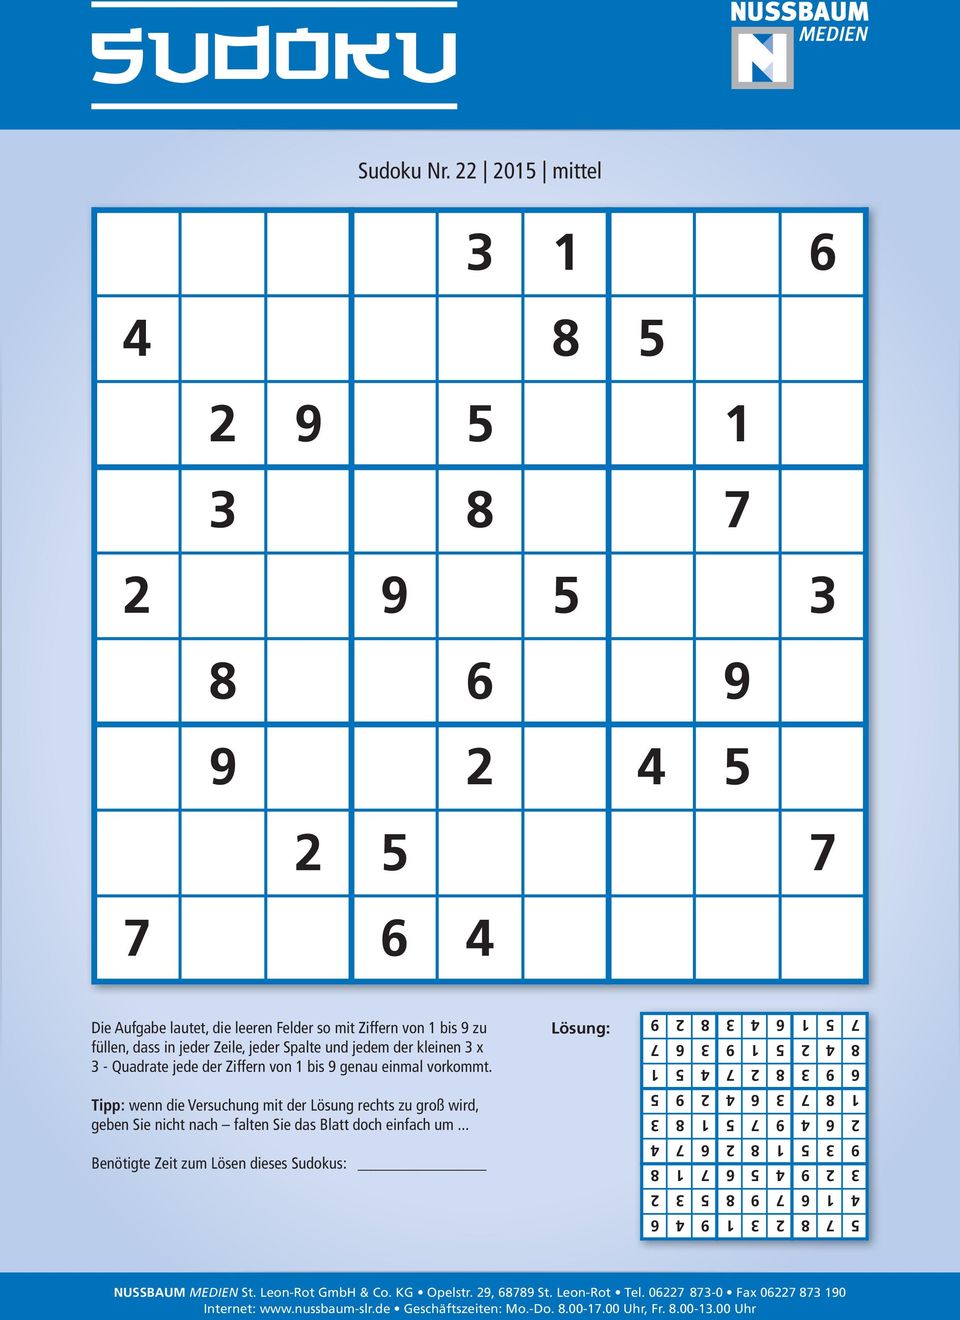 kleinen 3 x 3 - Quadrate jede der Ziffern von 1 bis 9 genau einmal vorkommt. Tipp: wenn die Versuchung mit der Lösung rechts zu groß wird, geben Sie nicht nach falten Sie das Blatt doch einfach um.